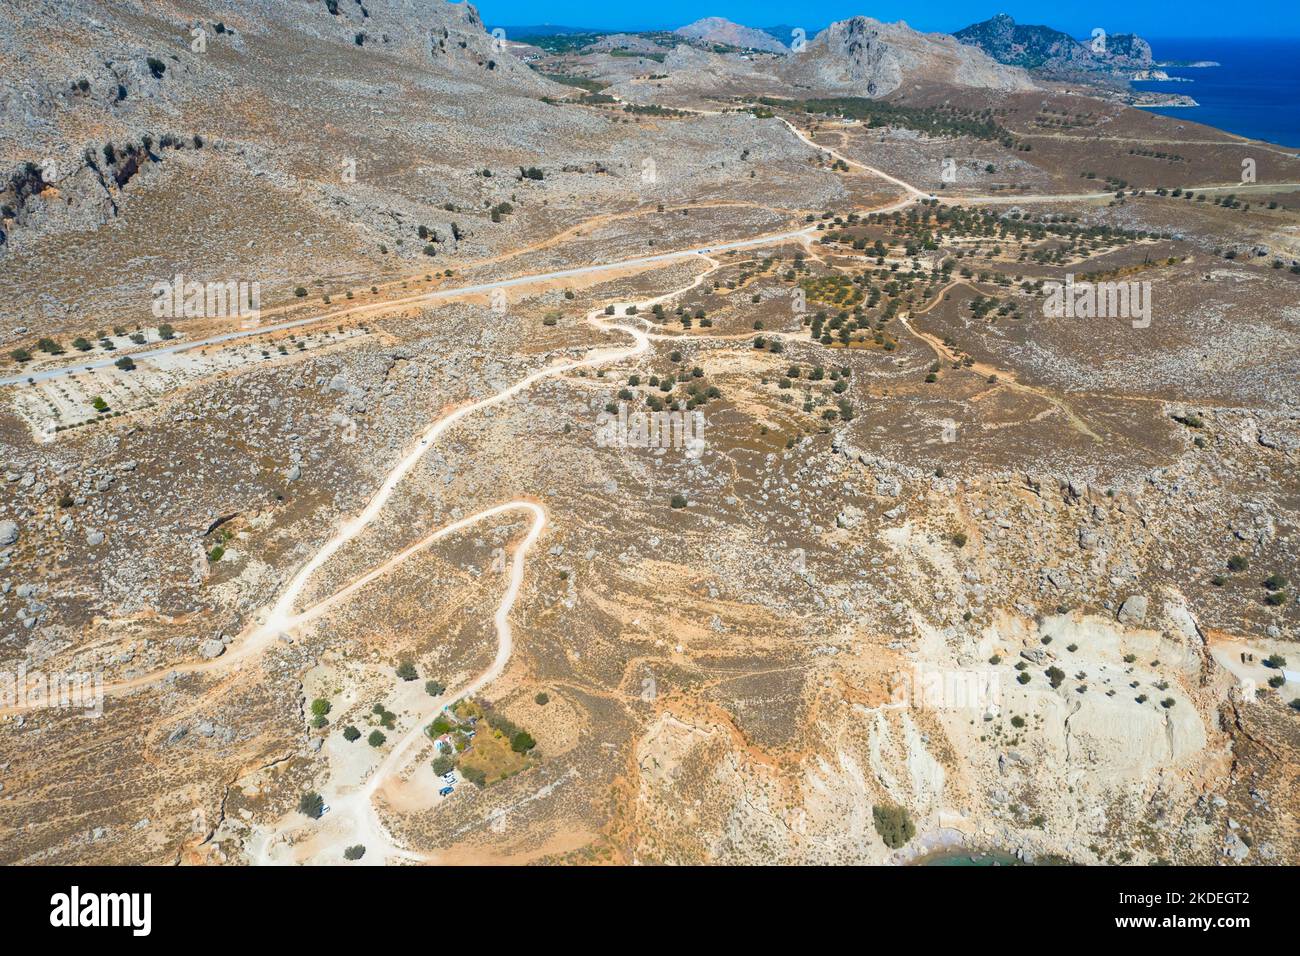 Spektakuläre Luftaufnahme mit Serpentinen-Off-Road-Strecke zum Gipfel des Attavyros-Berges. Höchster Berg auf der Insel Rhodos, Griechenland. Stockfoto